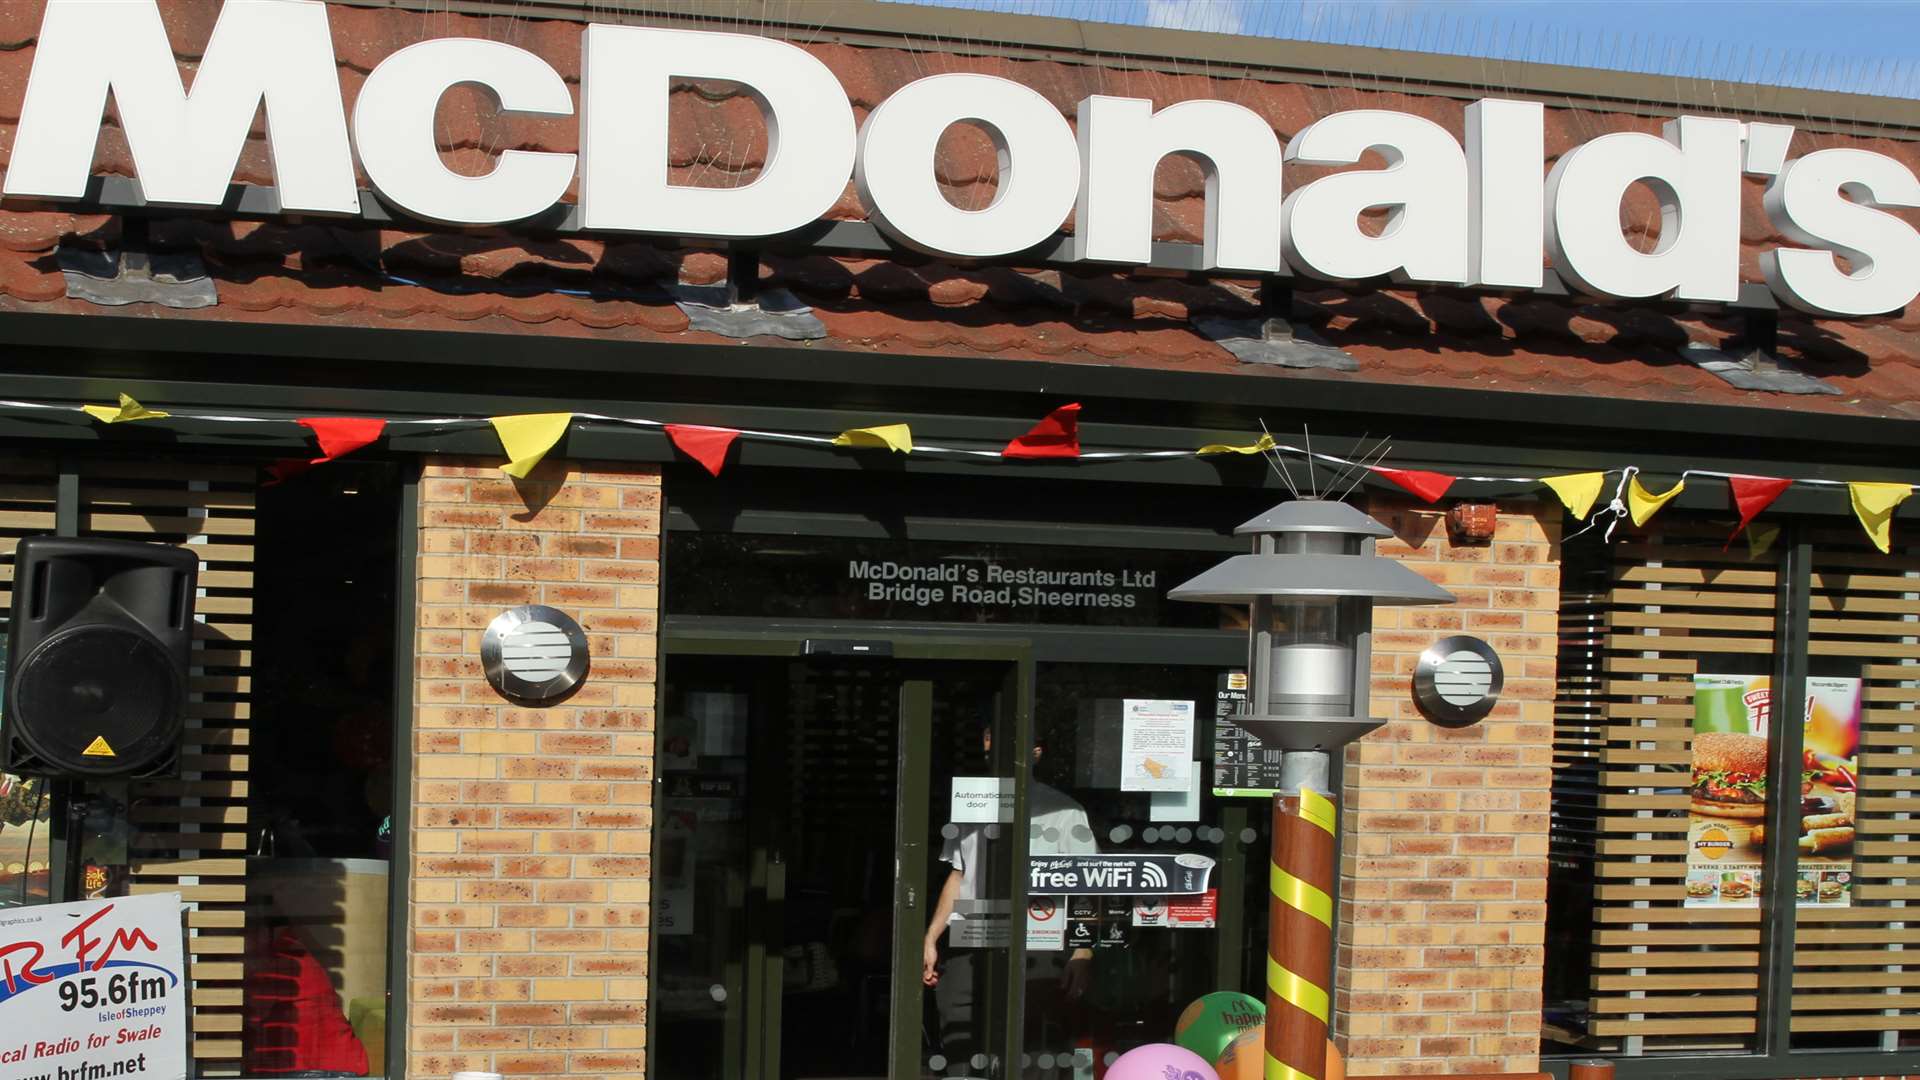 McDonald's restaurant, Bridge Road, Sheerness